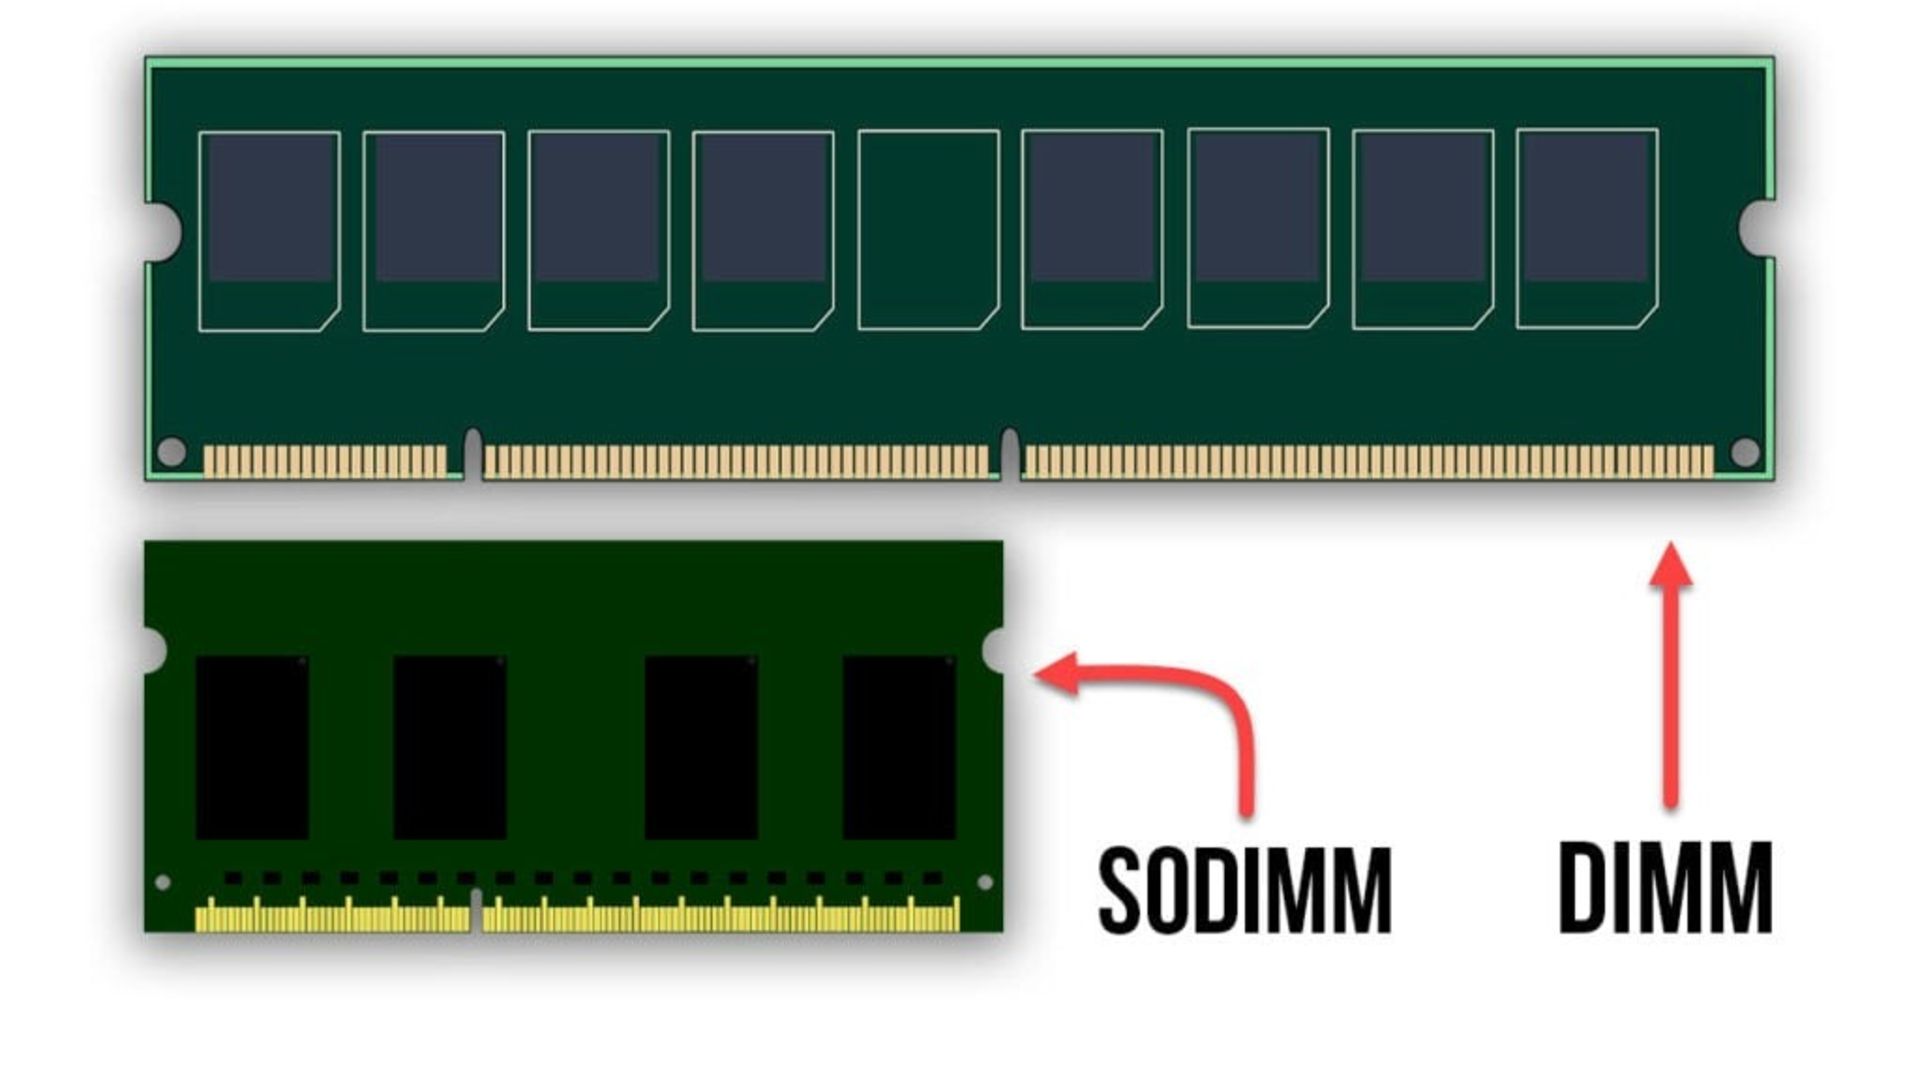 مرجع متخصصين ايران رم DIMM در مقابل رم SODIMM